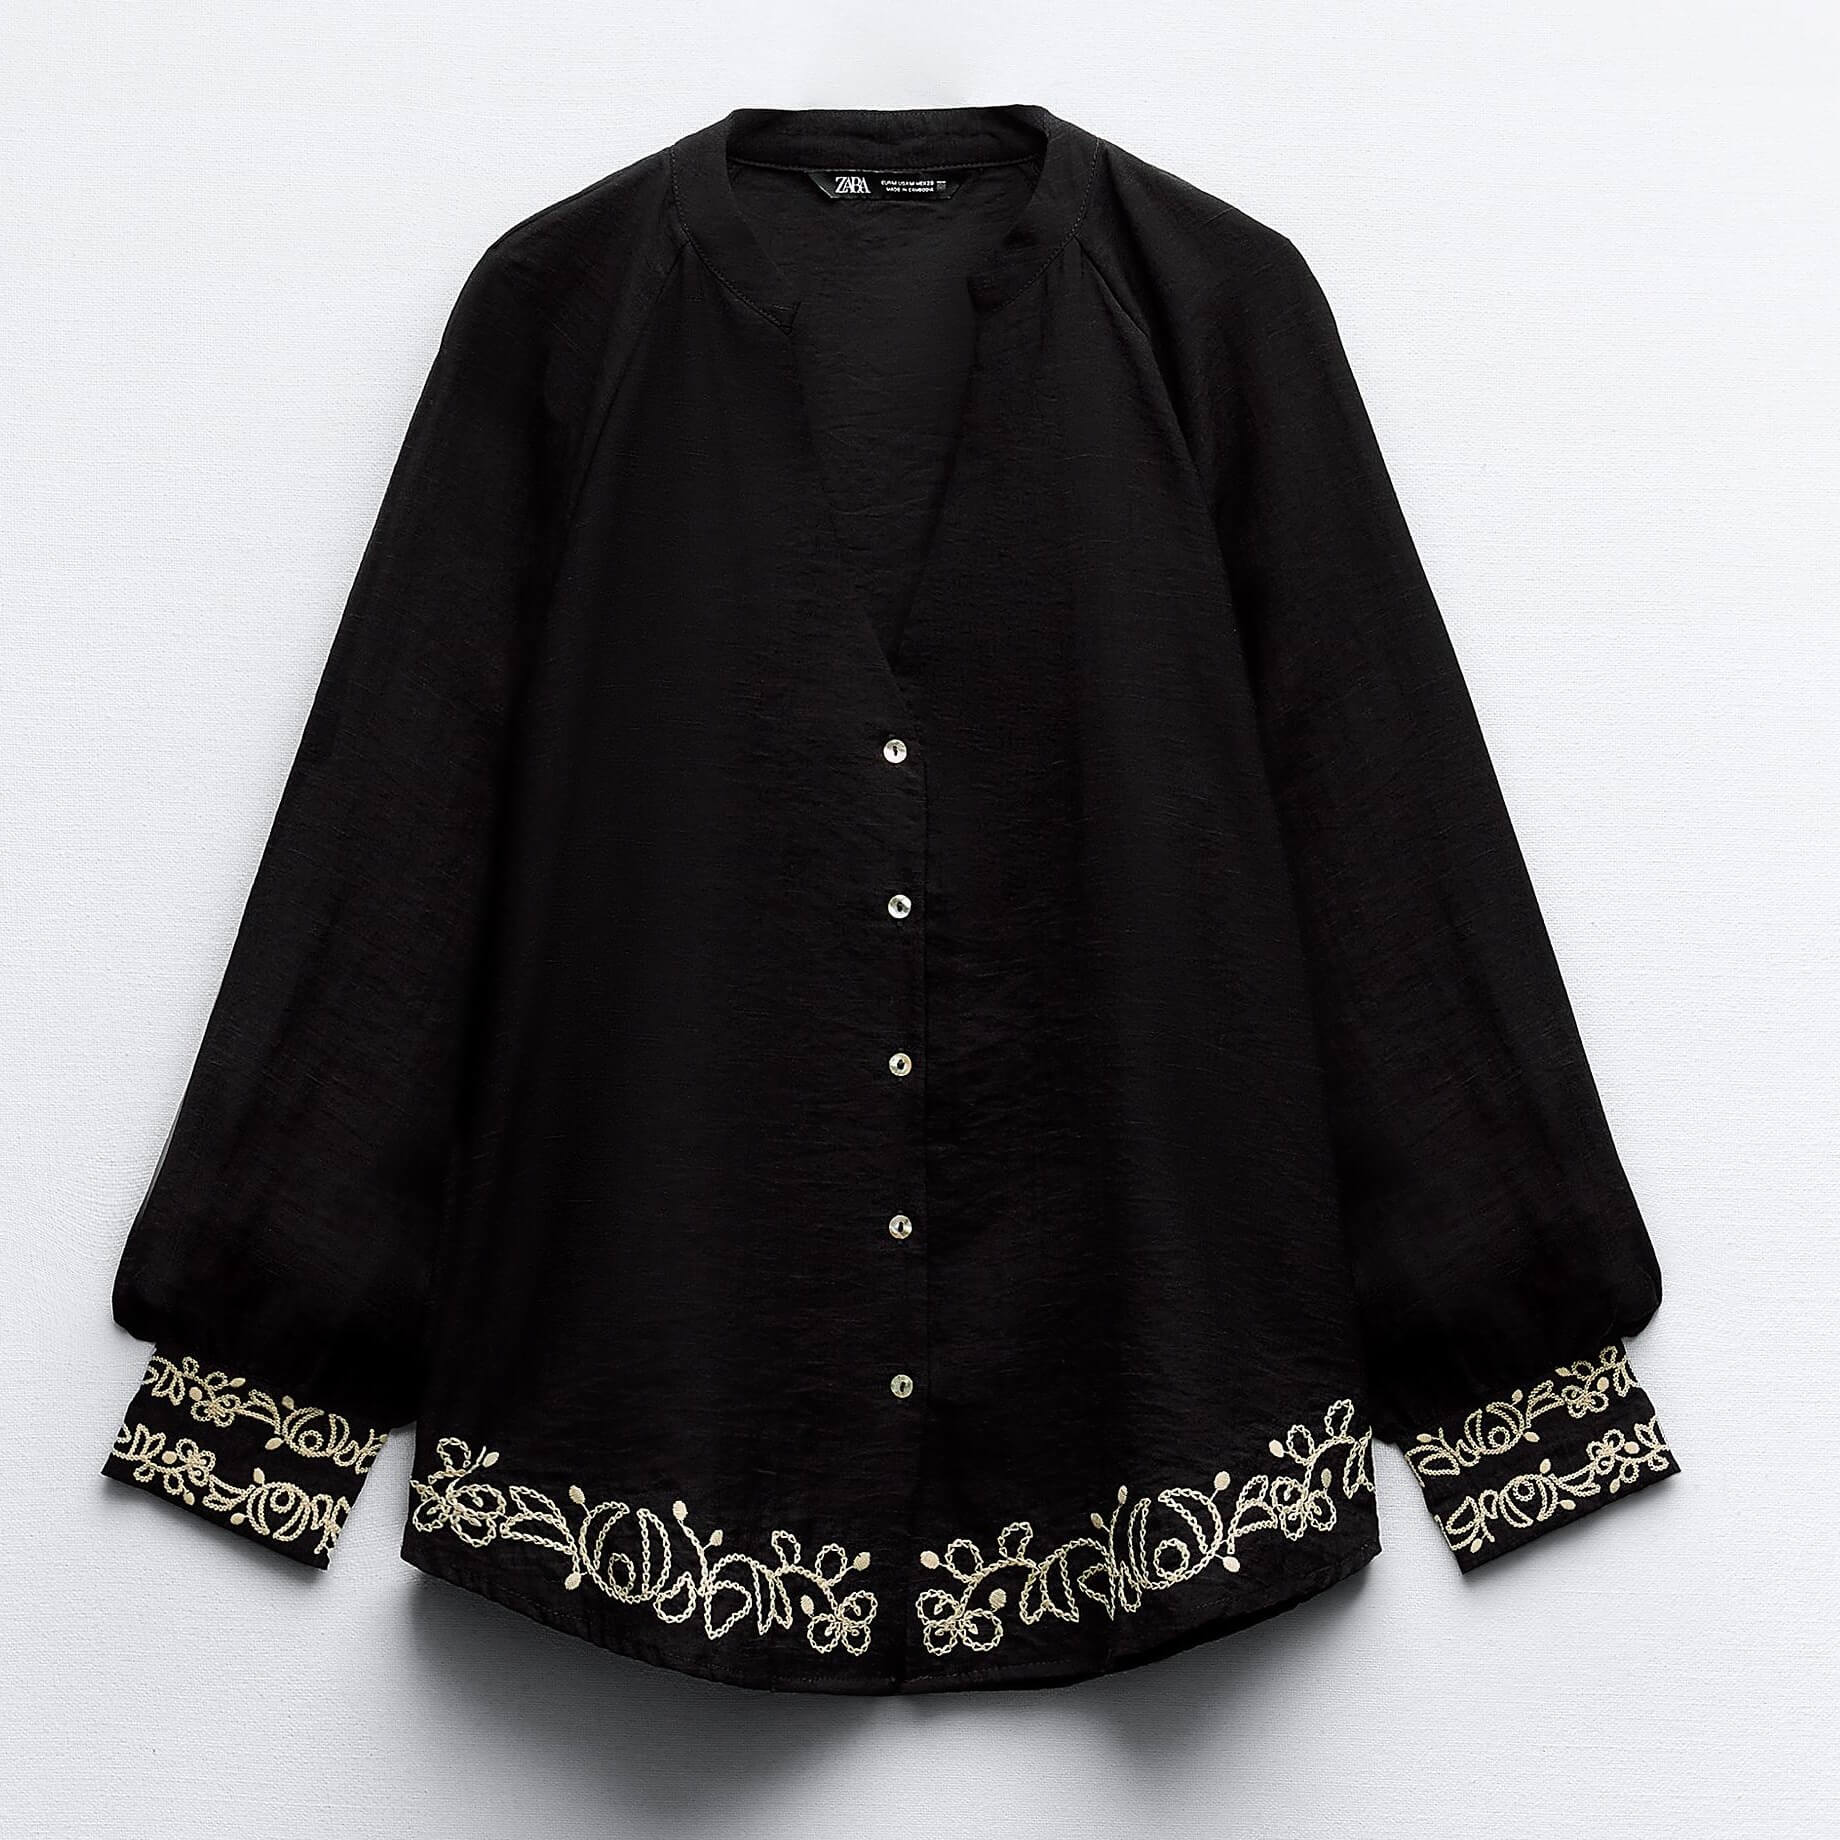 Блузка Zara With Combined Embroidery, черный рубашка женская джинсовая с отложным воротником модная блузка из денима с длинными рукавами джинсовая мягкая блузка синего цвета весна л